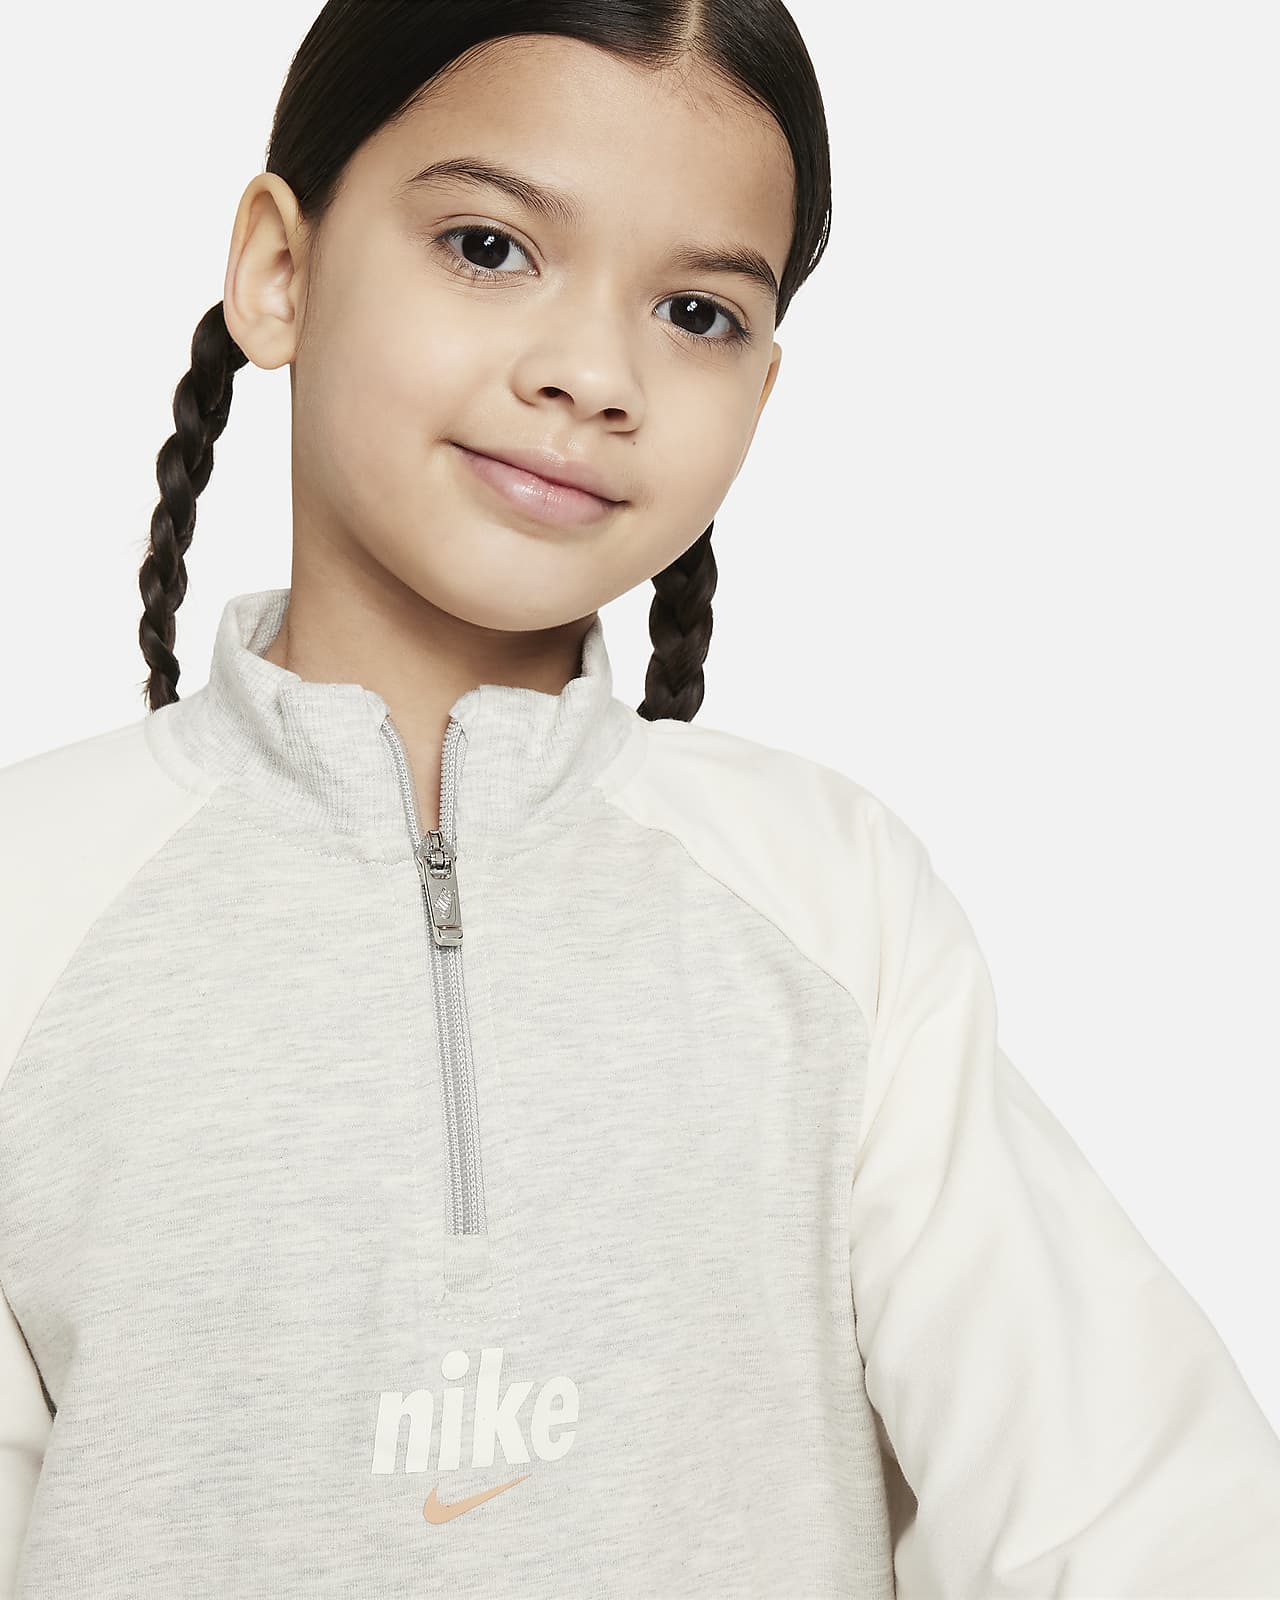 Nike E1D1 Little Kids' 2-Piece Half-Zip Set